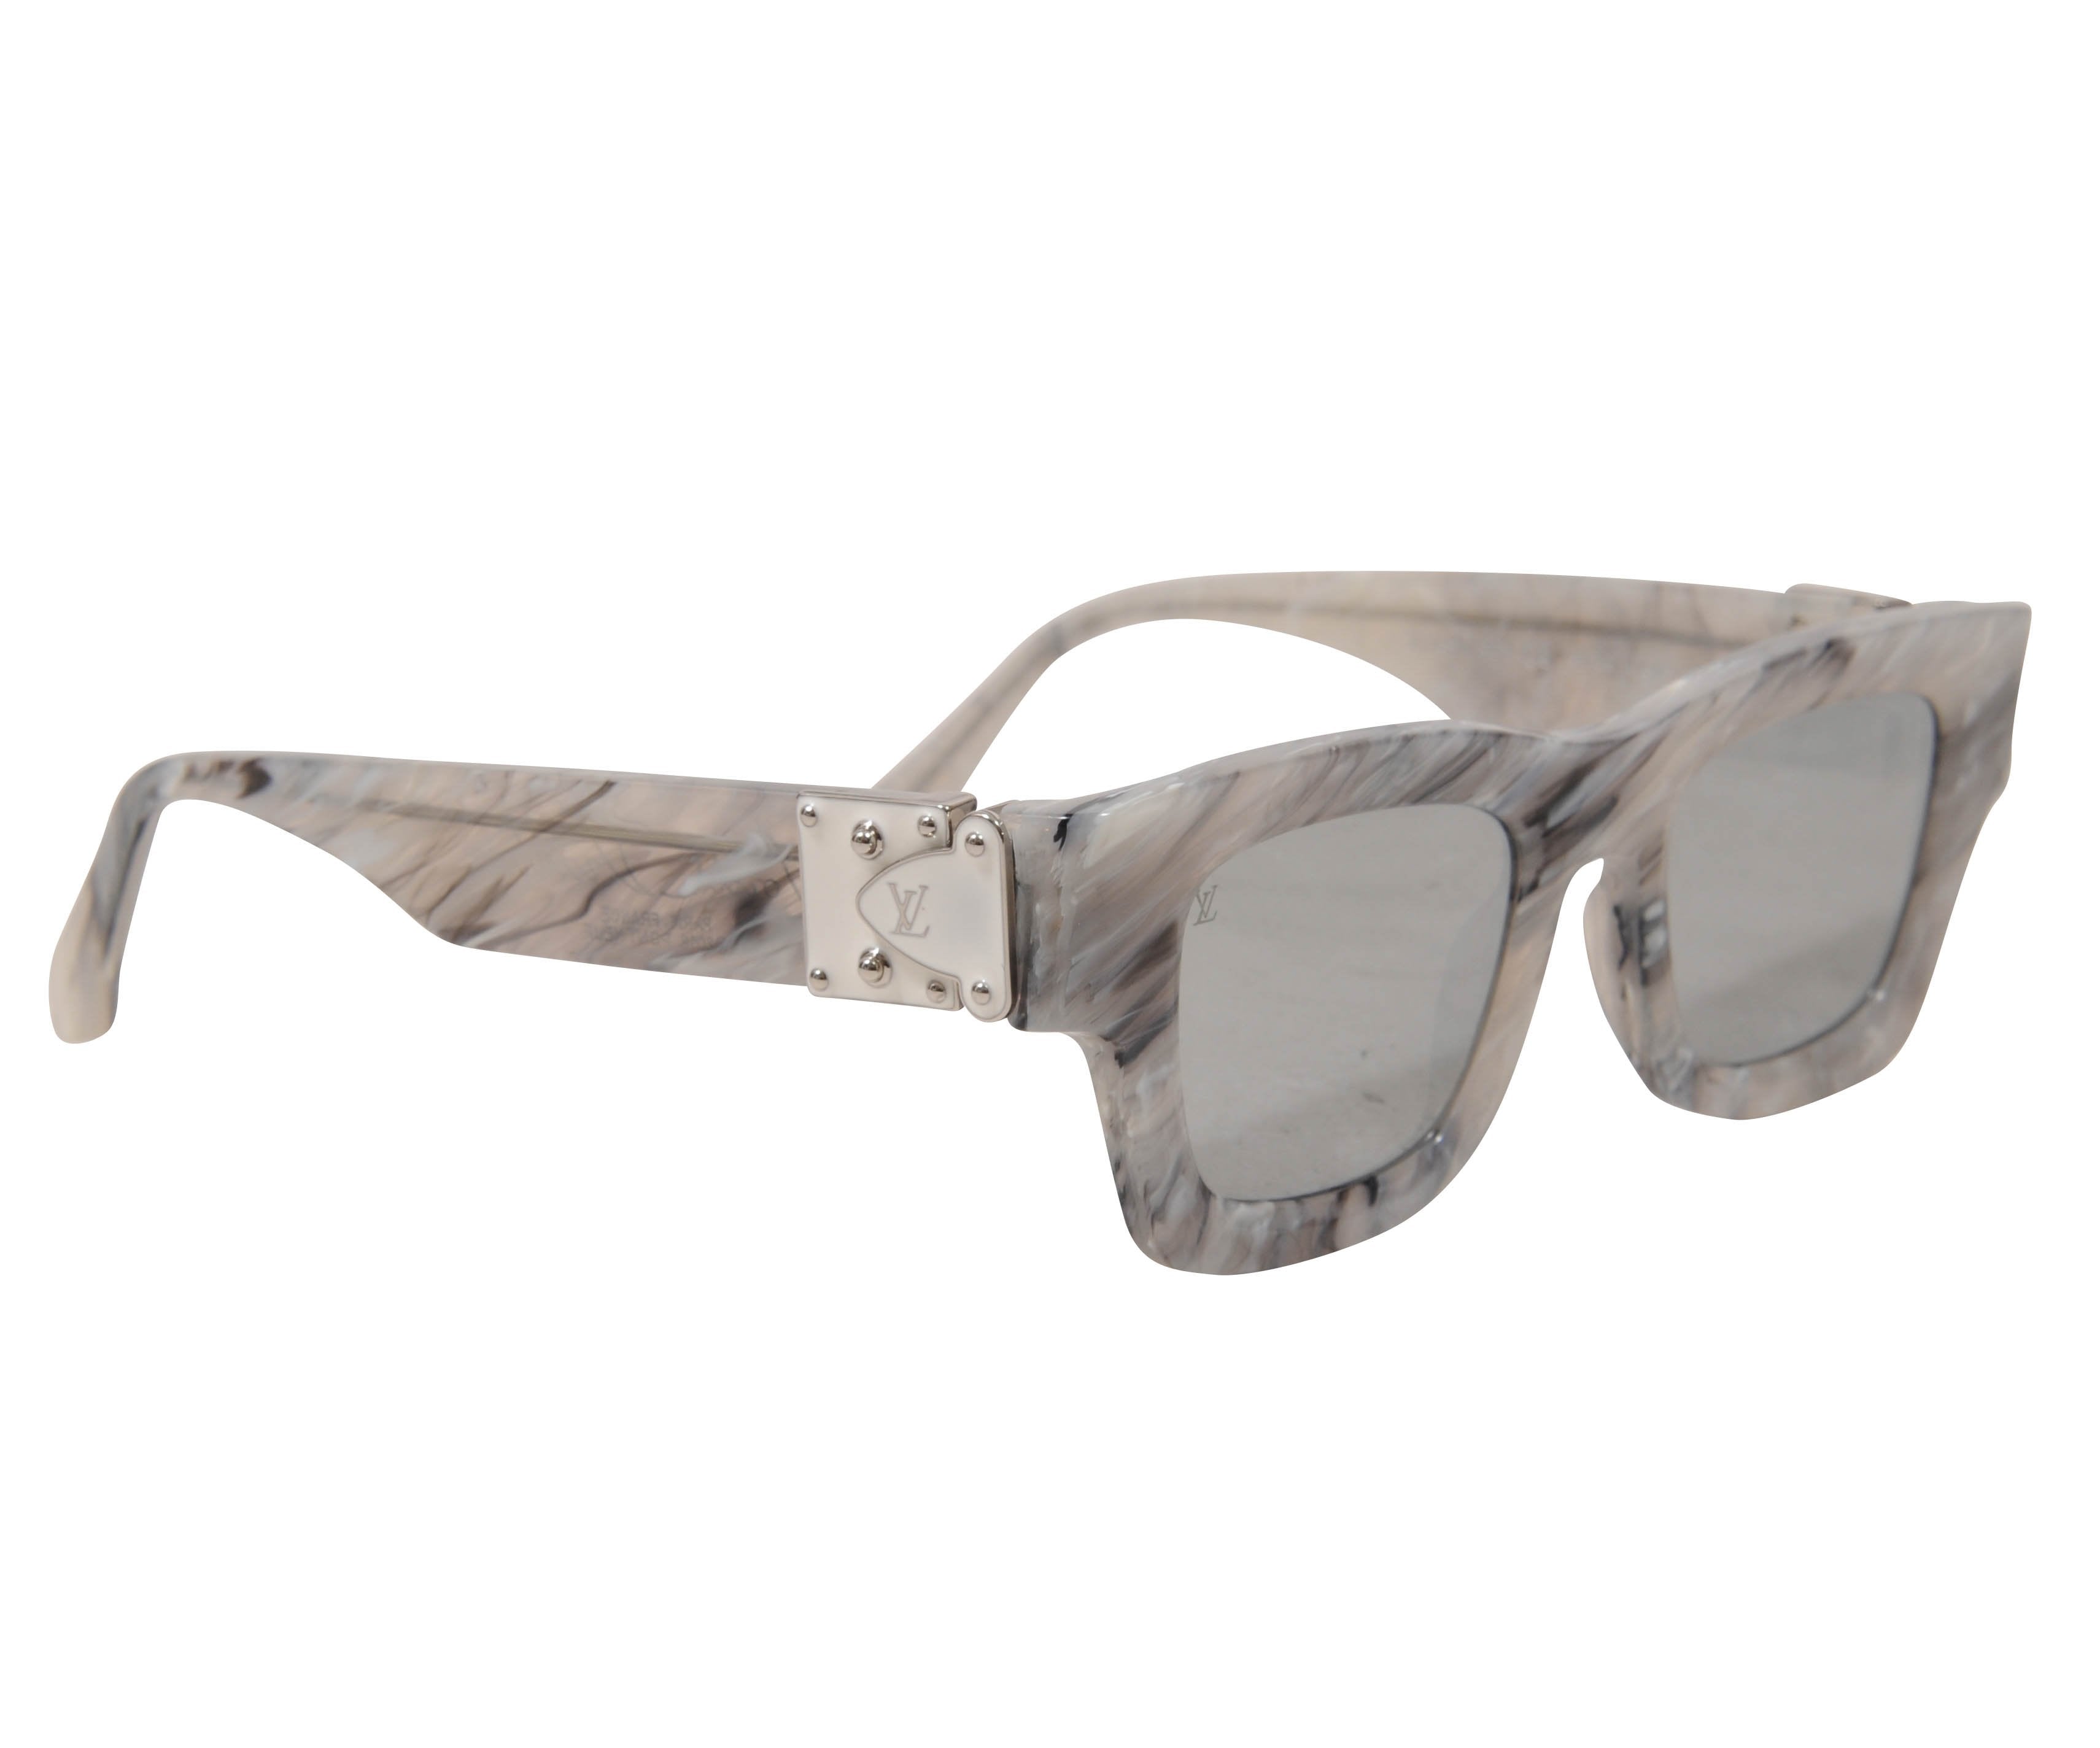 Buy Louis Vuitton Sunglasses For Men-52323-320 - Reflexions